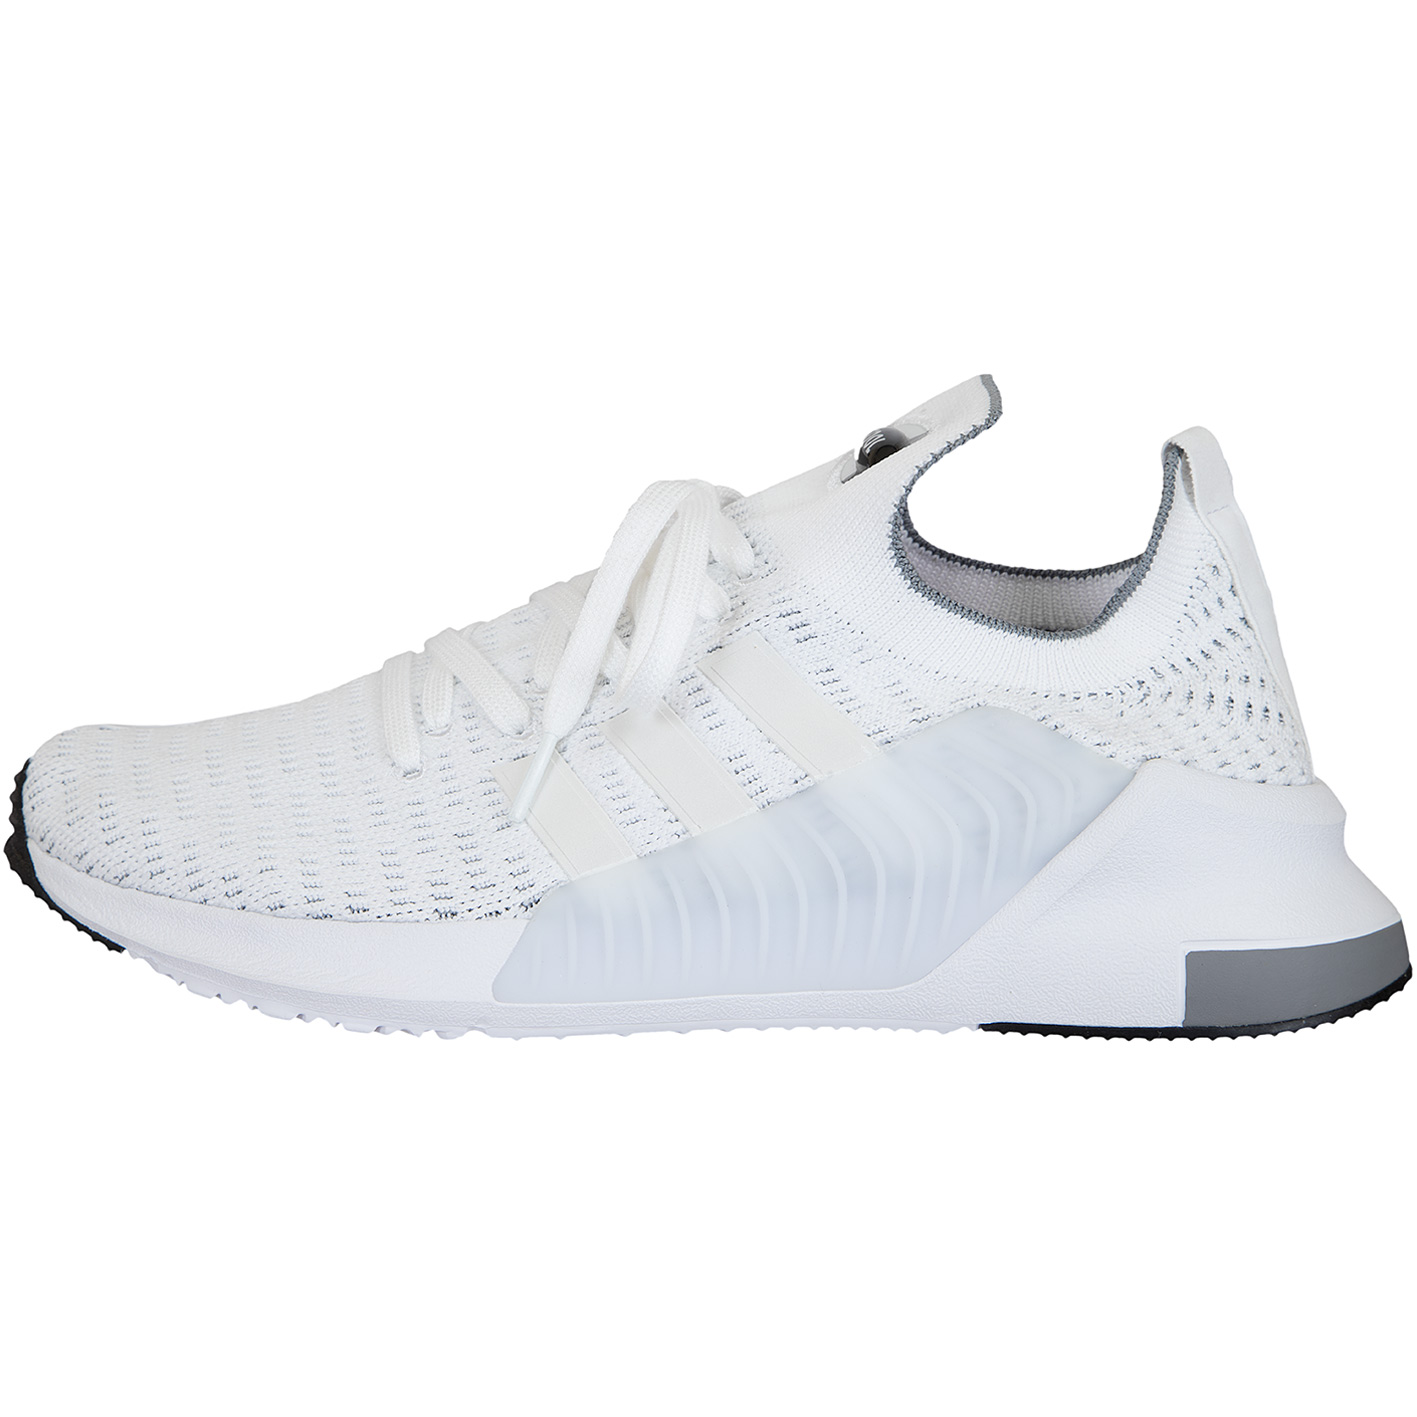 ☆ Adidas Originals Sneaker Climacool 02/17 Primeknit weiß/weiß - hier  bestellen!